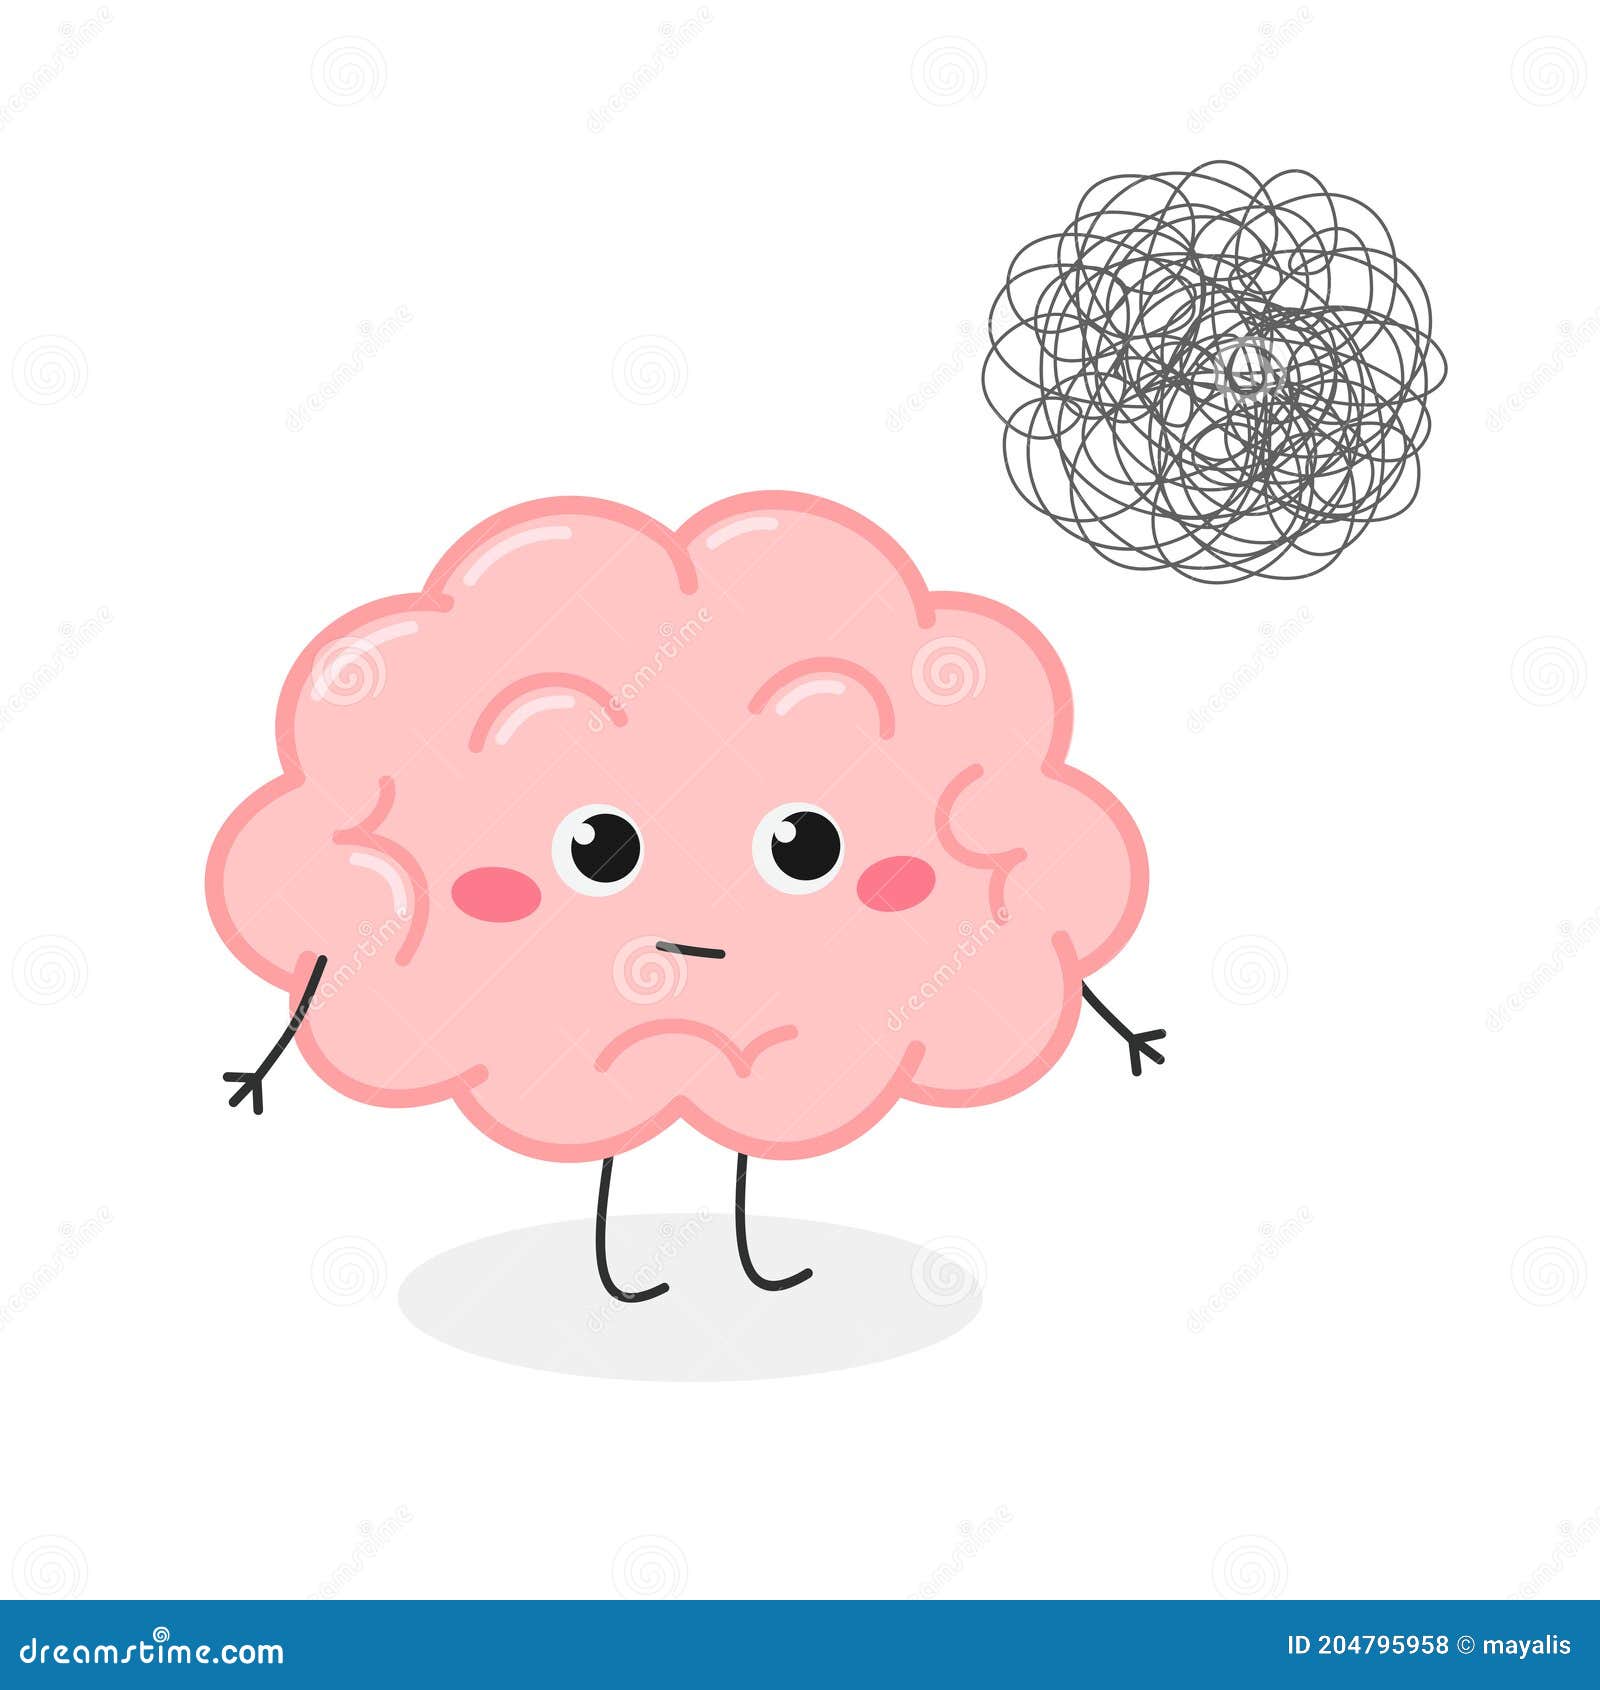 Cerebro De Dibujos Animados Con Maraña De Pensamientos Desordenados Stock  de ilustración - Ilustración de emoticono, ojos: 204795958